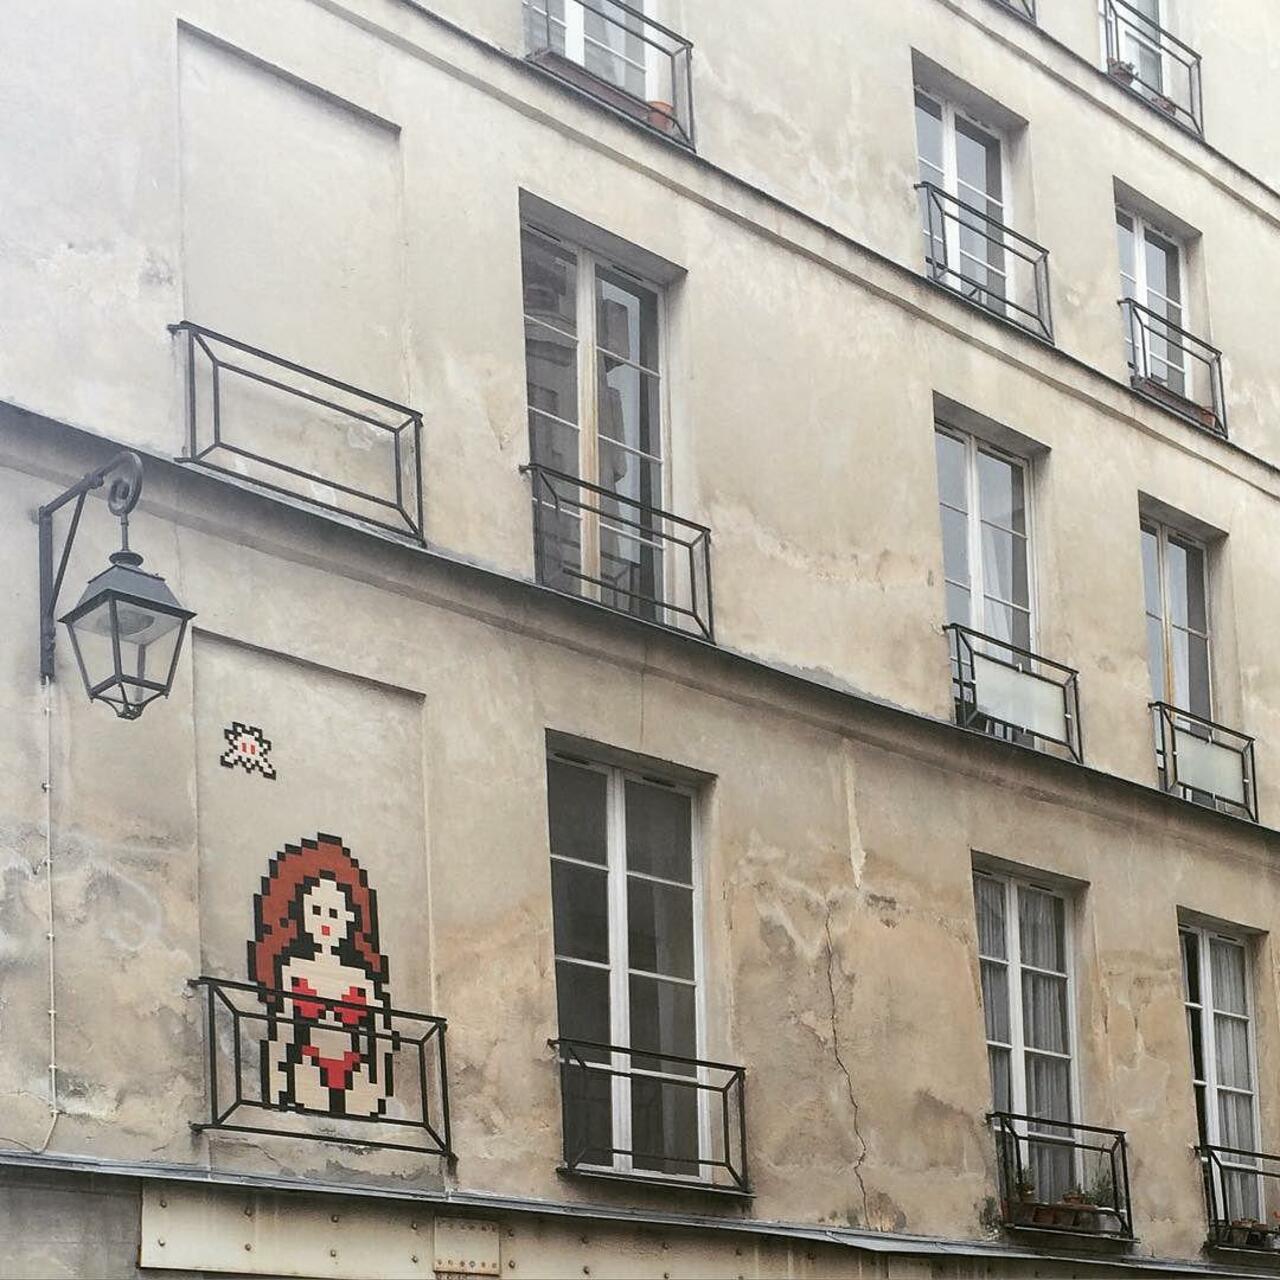 RT @circumjacent_fr: #Paris #graffiti photo by @julienvermeulen http://ift.tt/1QpqbJ6 #StreetArt http://t.co/aHs29muAGD